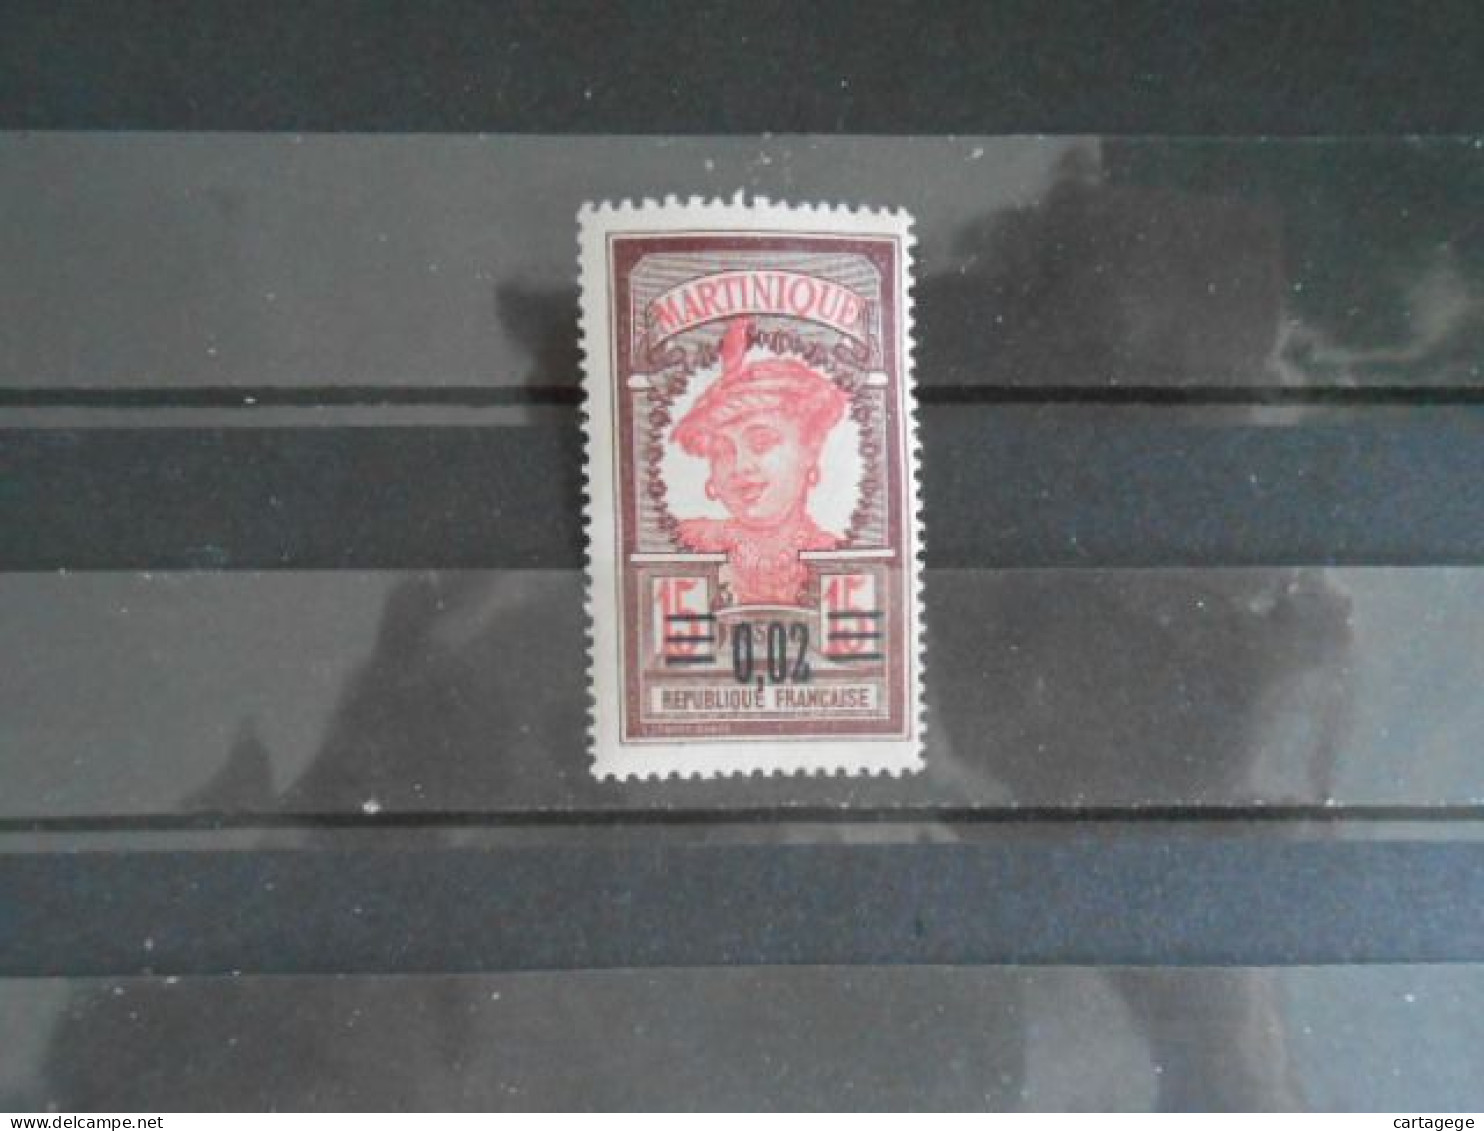 MARTINIQUE YT 87 MARTINIQUAISE 2c. S. 15c. (66)* - Unused Stamps